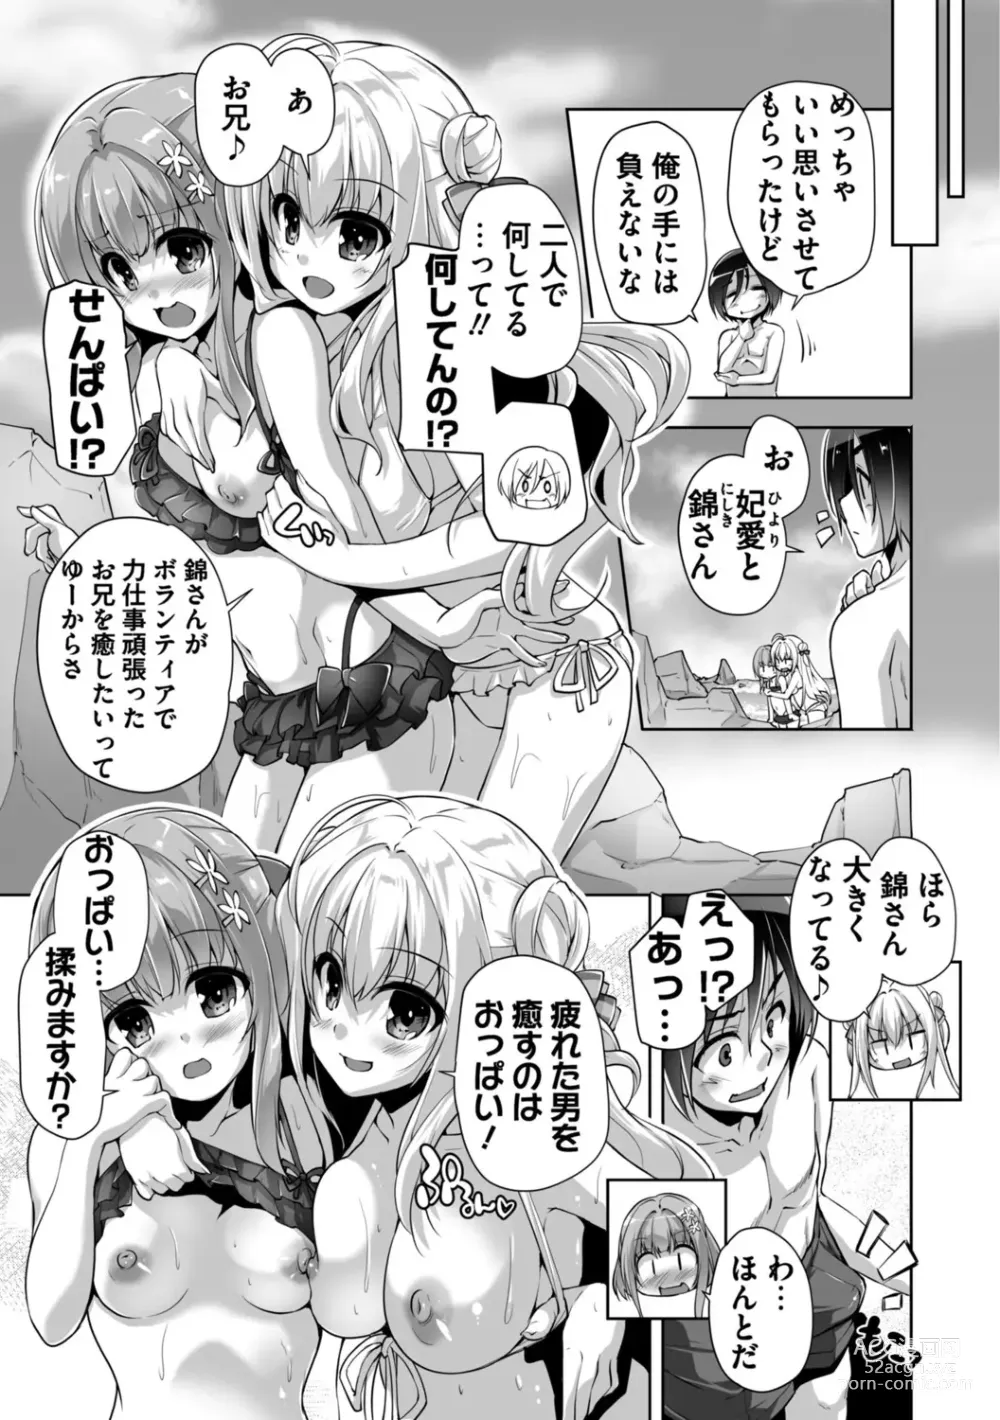 Page 197 of manga Hamidashi Creative Adult Edition